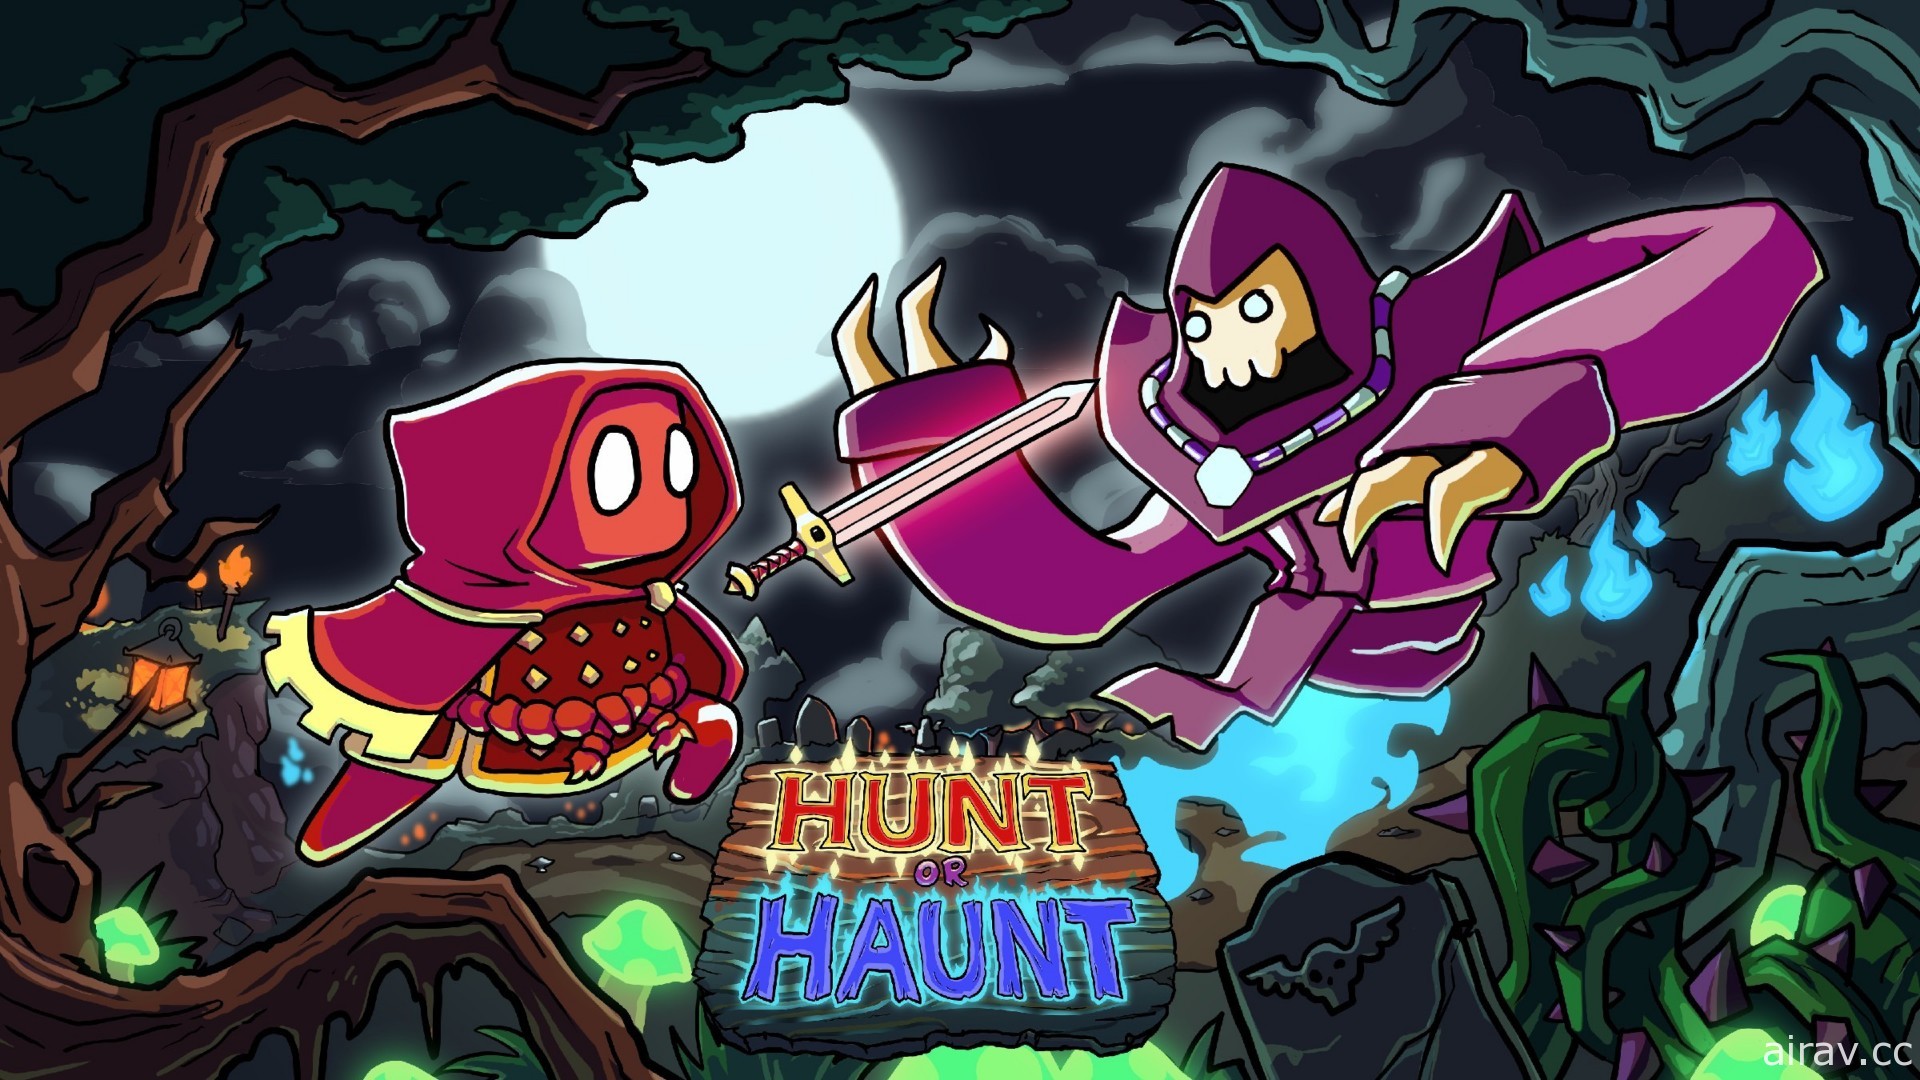 【TpGS 22】台湾派对竞技游戏《闪灵猎人 Hunt-or-Haunt》在电玩展开放抢先体验